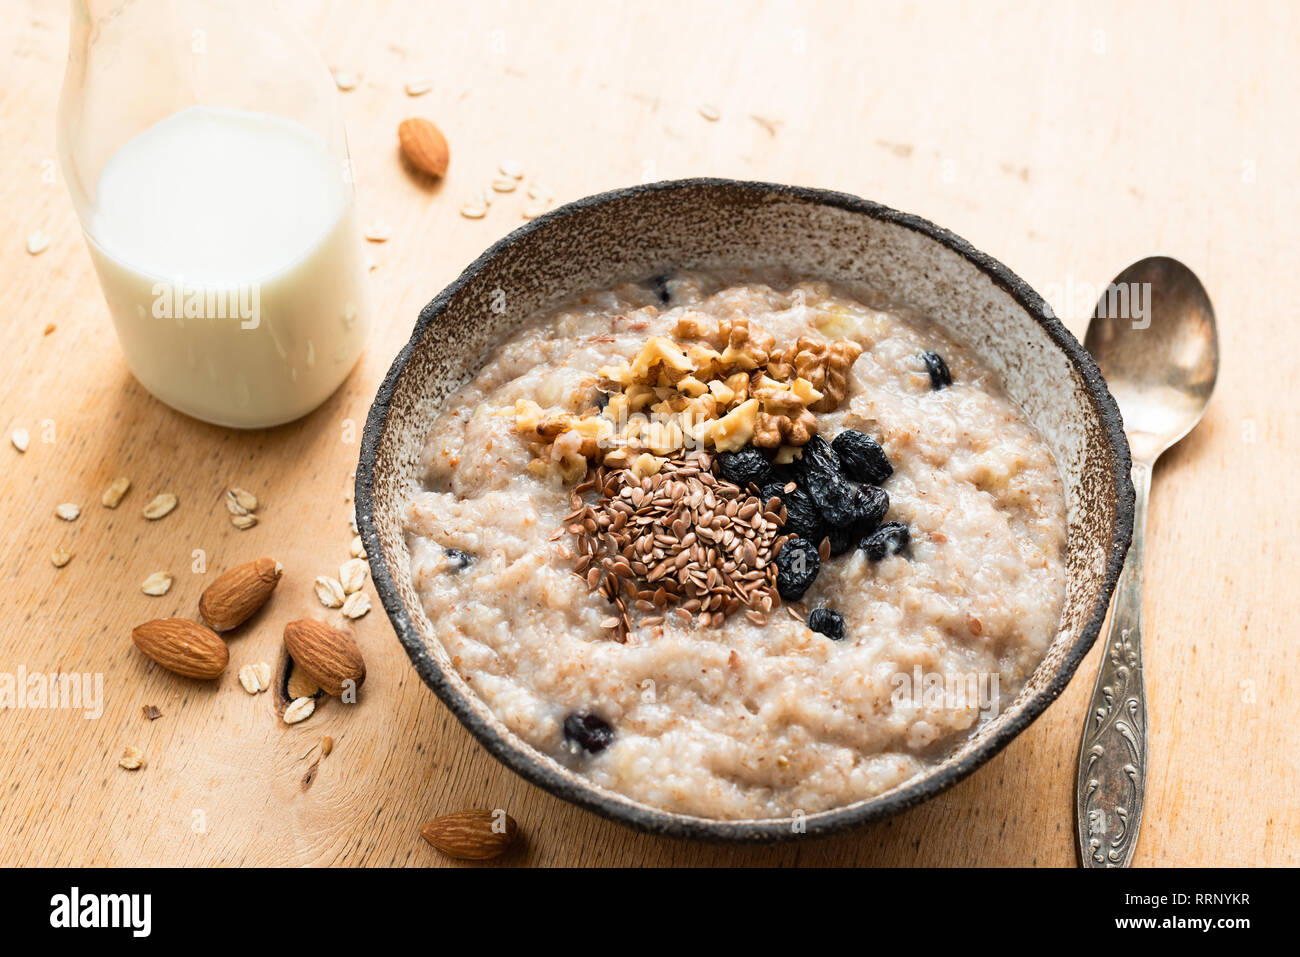 La prima colazione il porridge di avena nella ciotola sul tavolo di legno.  Farina di avena